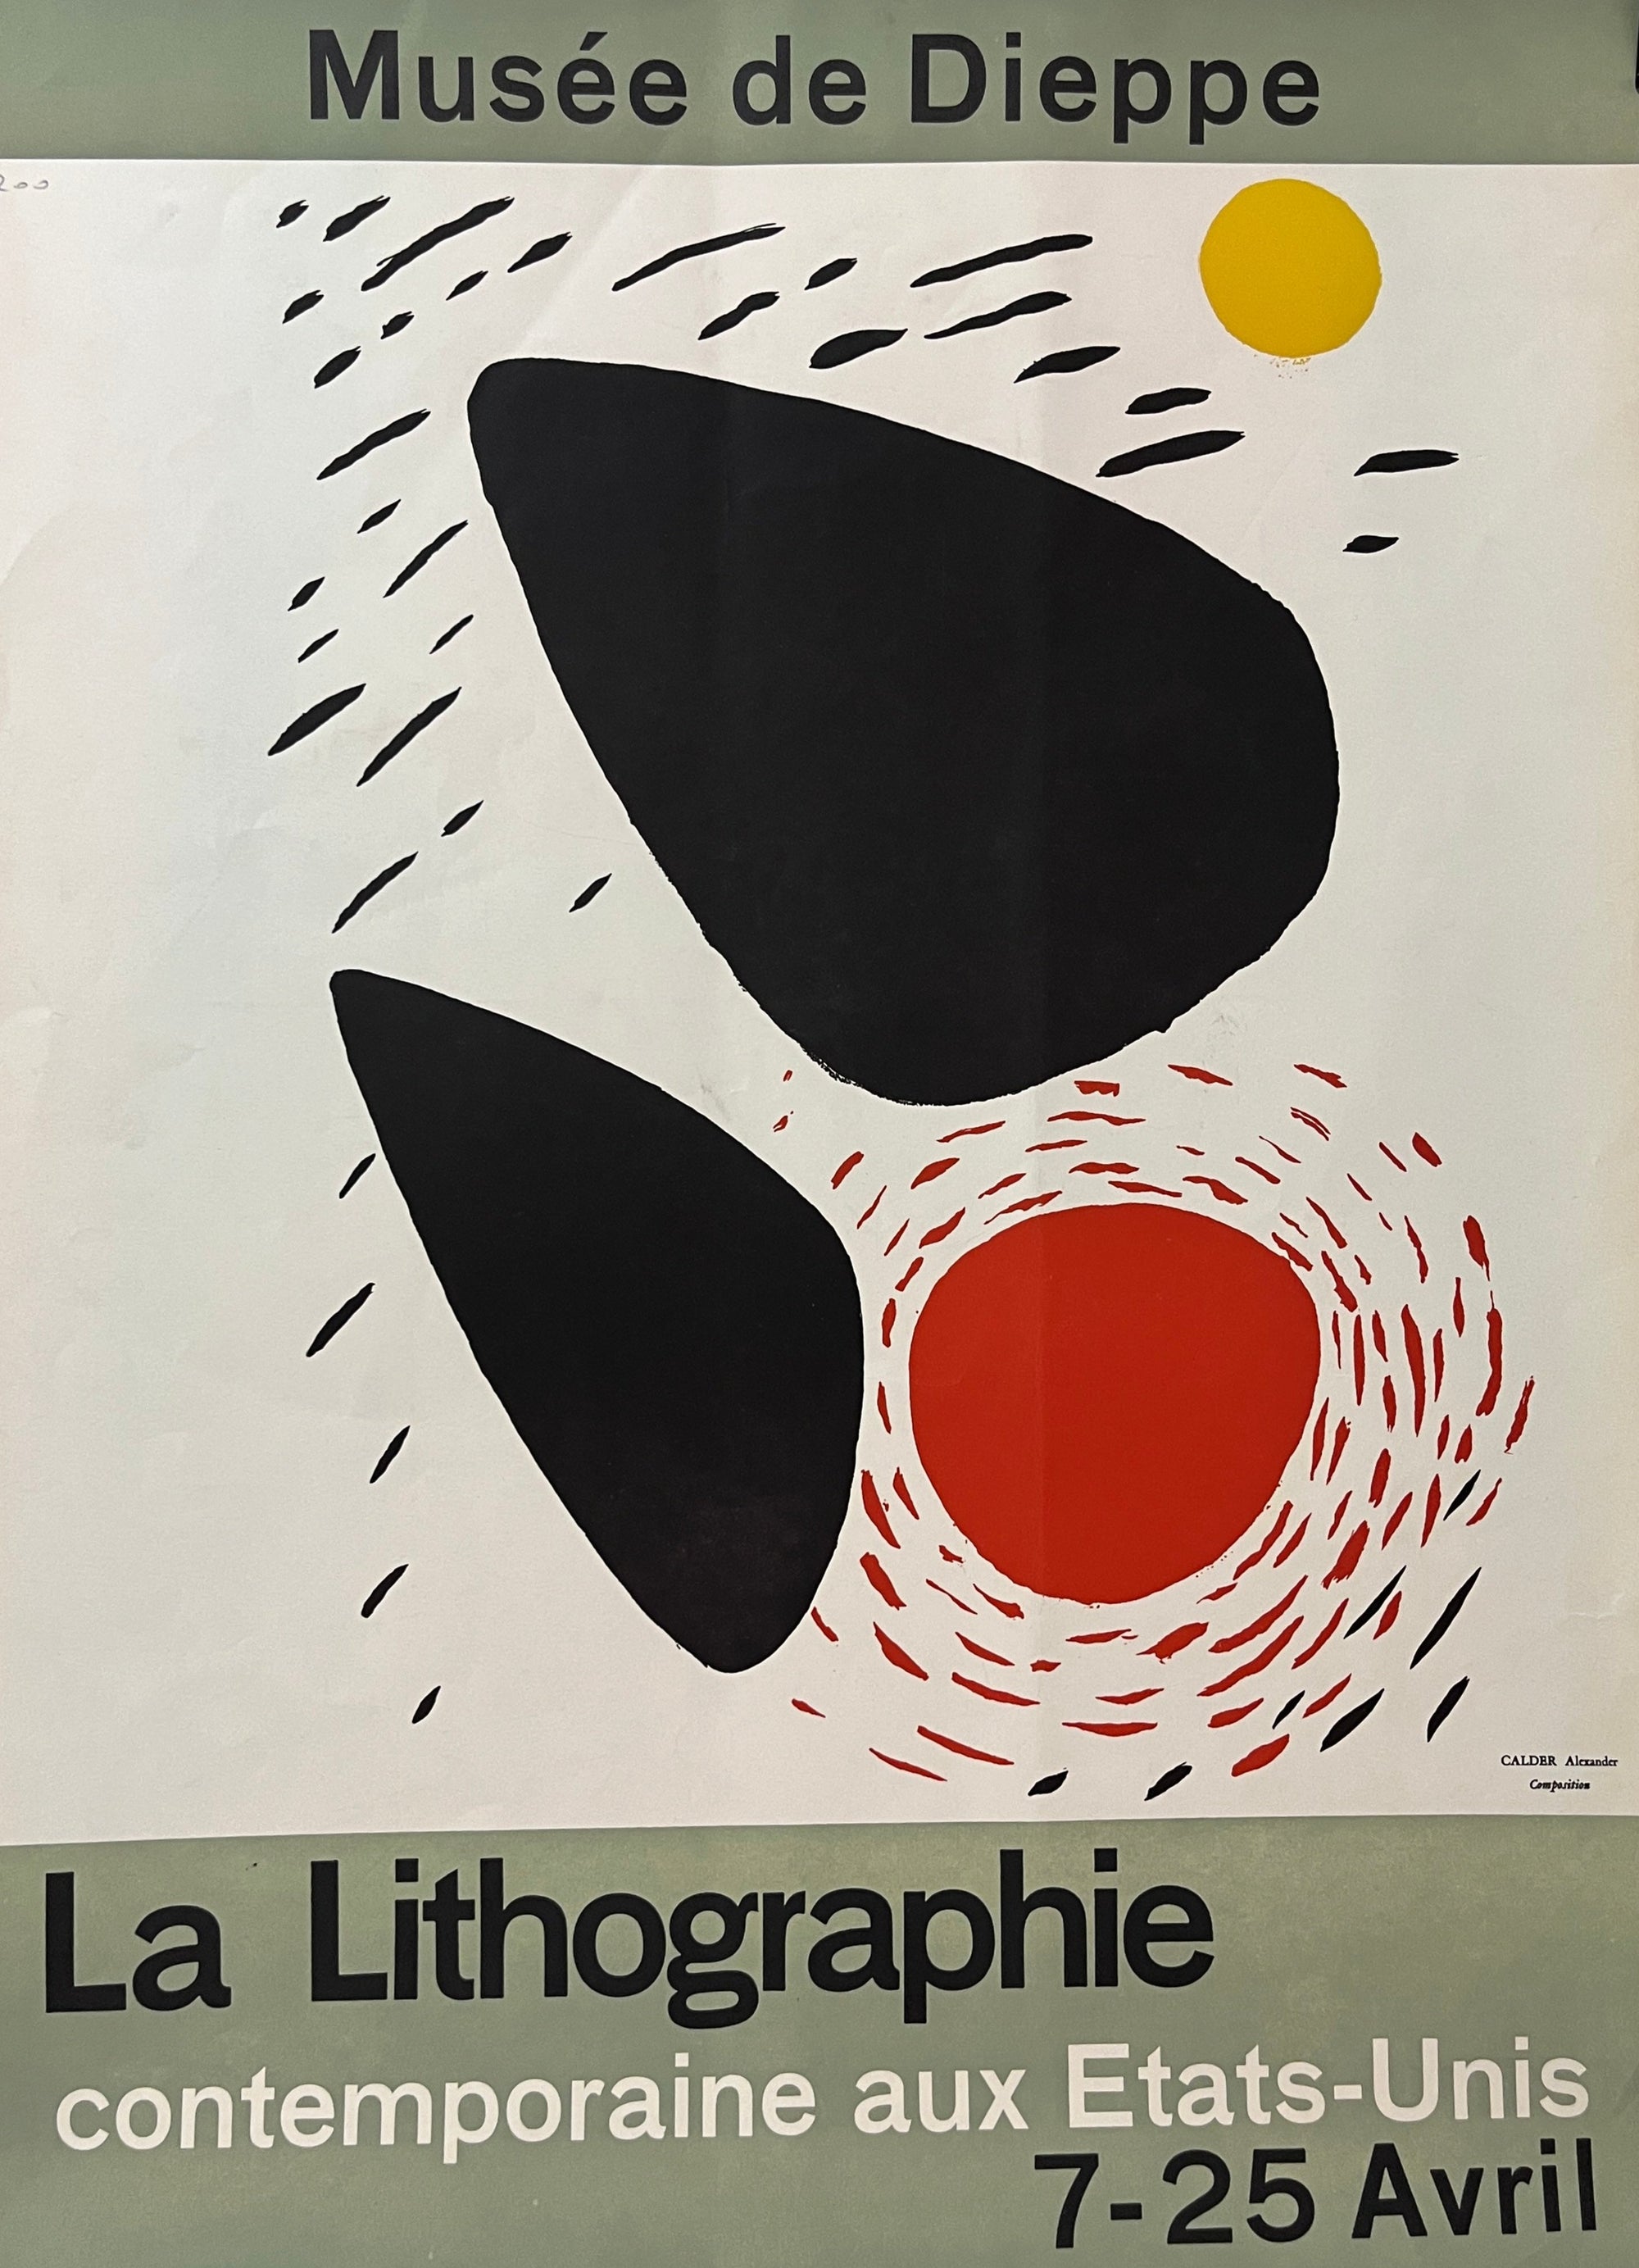 Musee de Dieppe La Lithographie by Calder